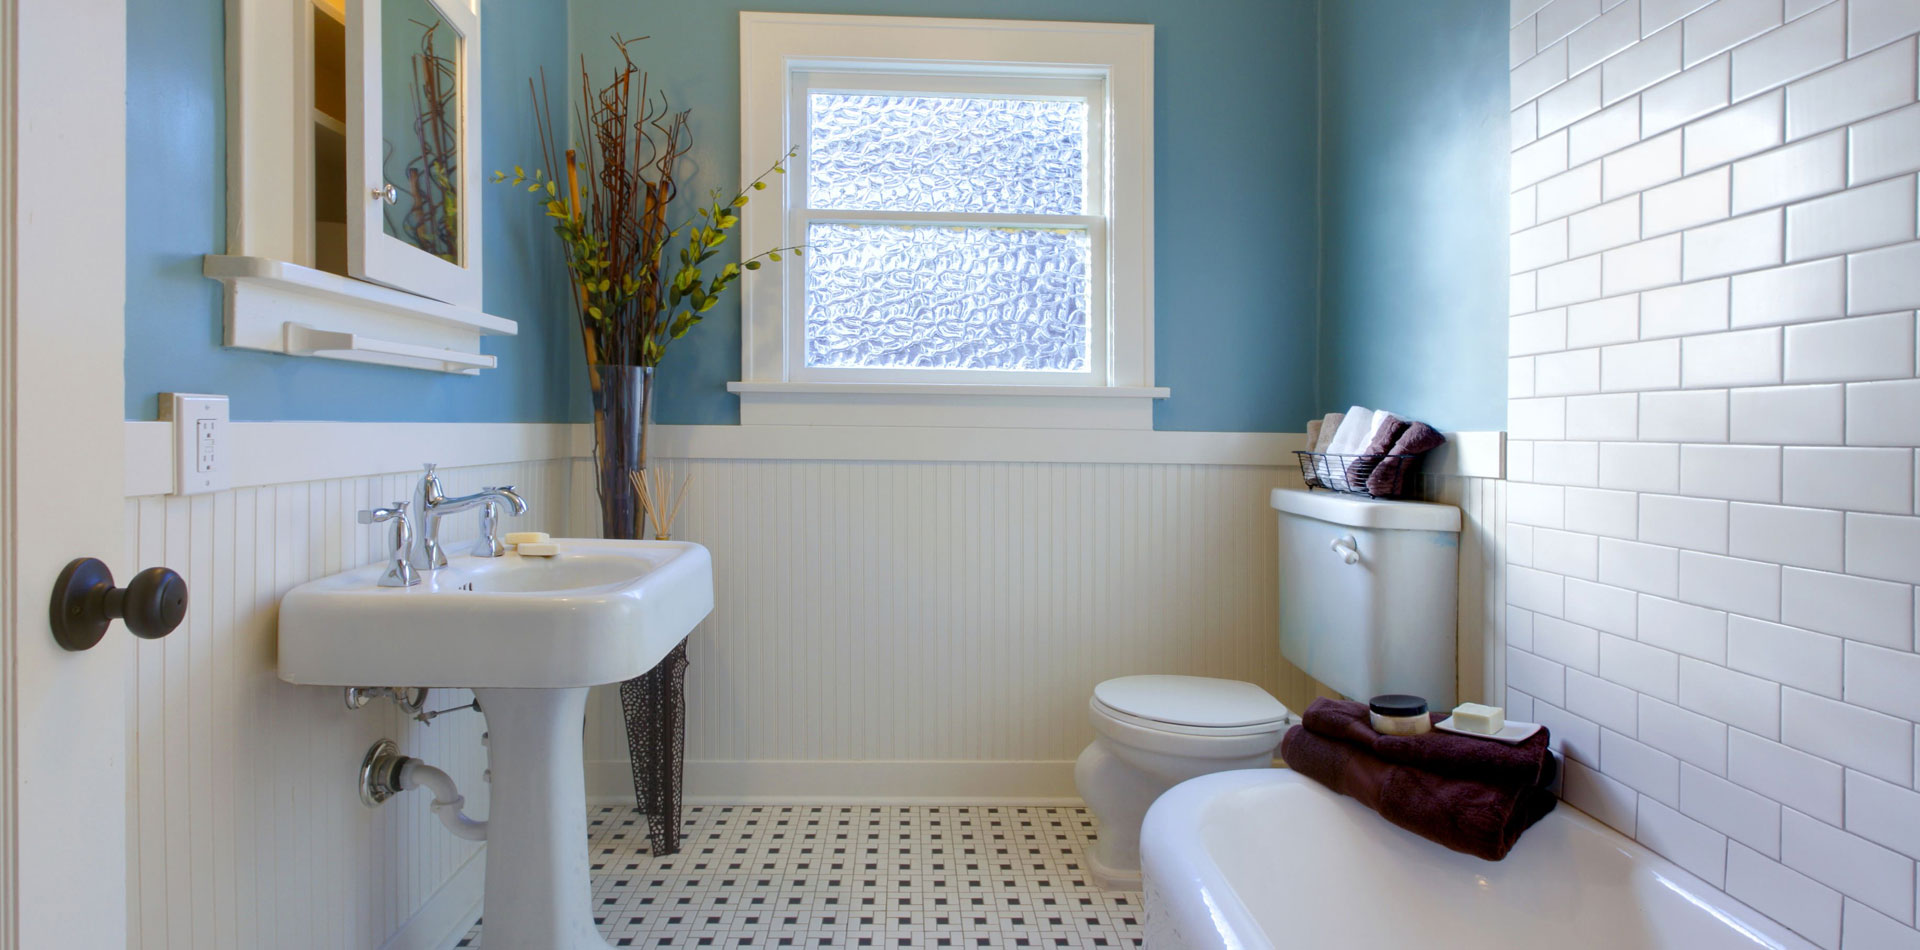 Elige los colores adecuados para el cuarto de baño y el espacio de trabajo